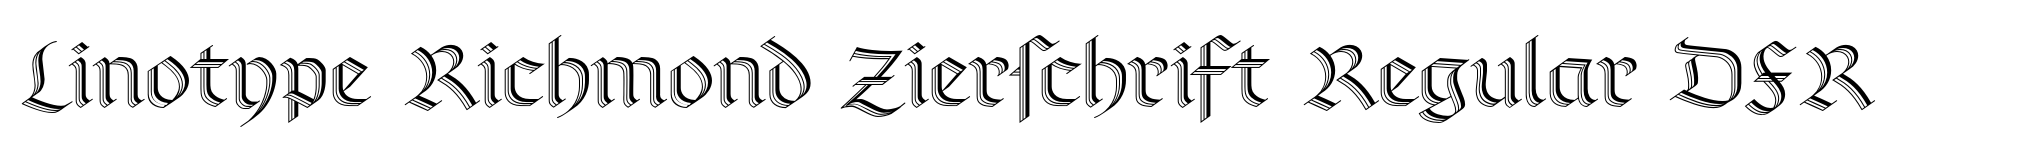 Linotype Richmond Zierschrift Regular DFR image